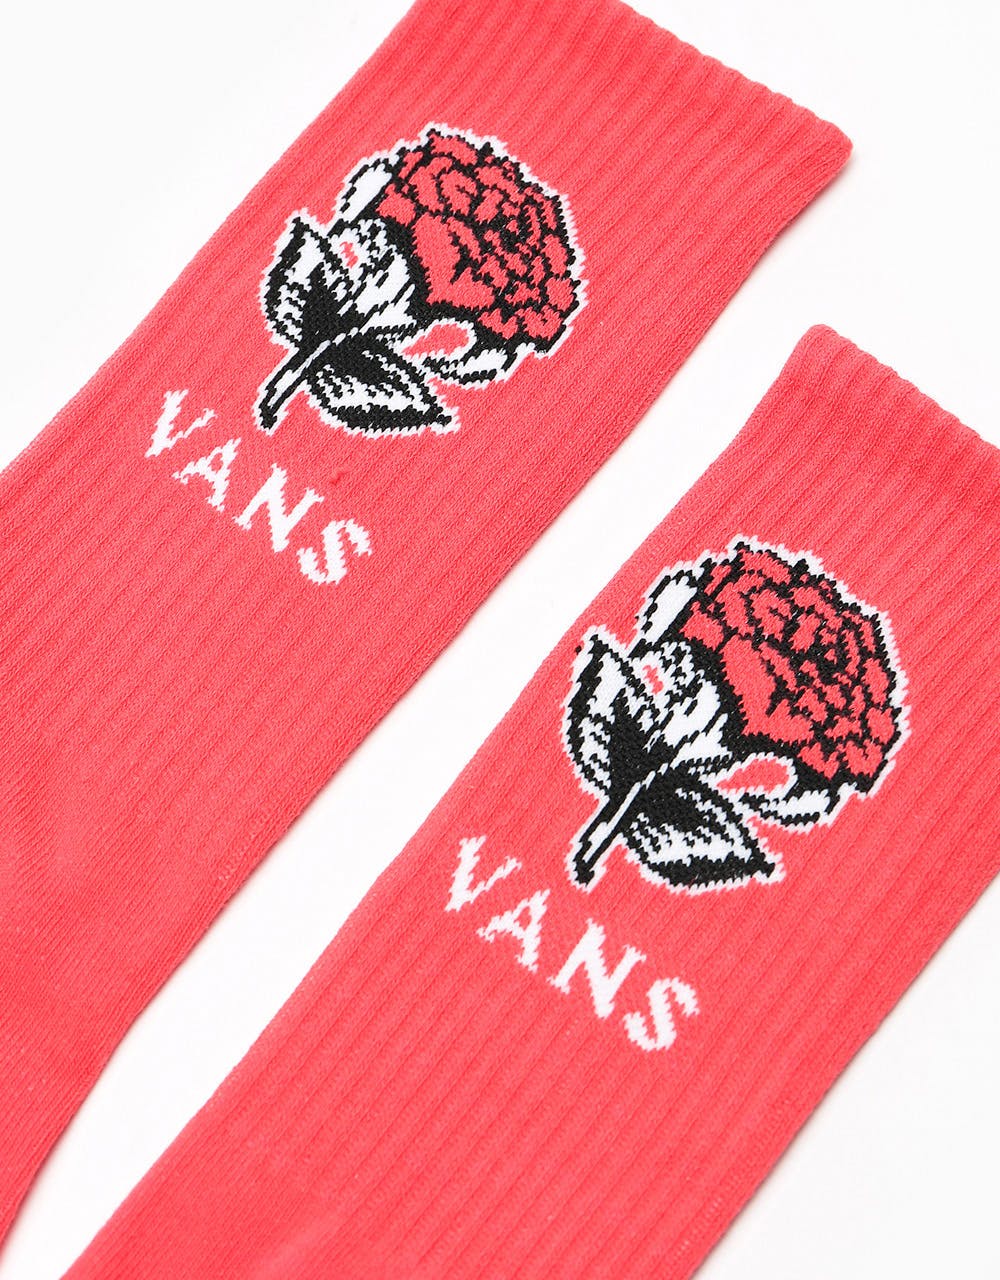 Vans Handover Crew Socks - Hibiscus